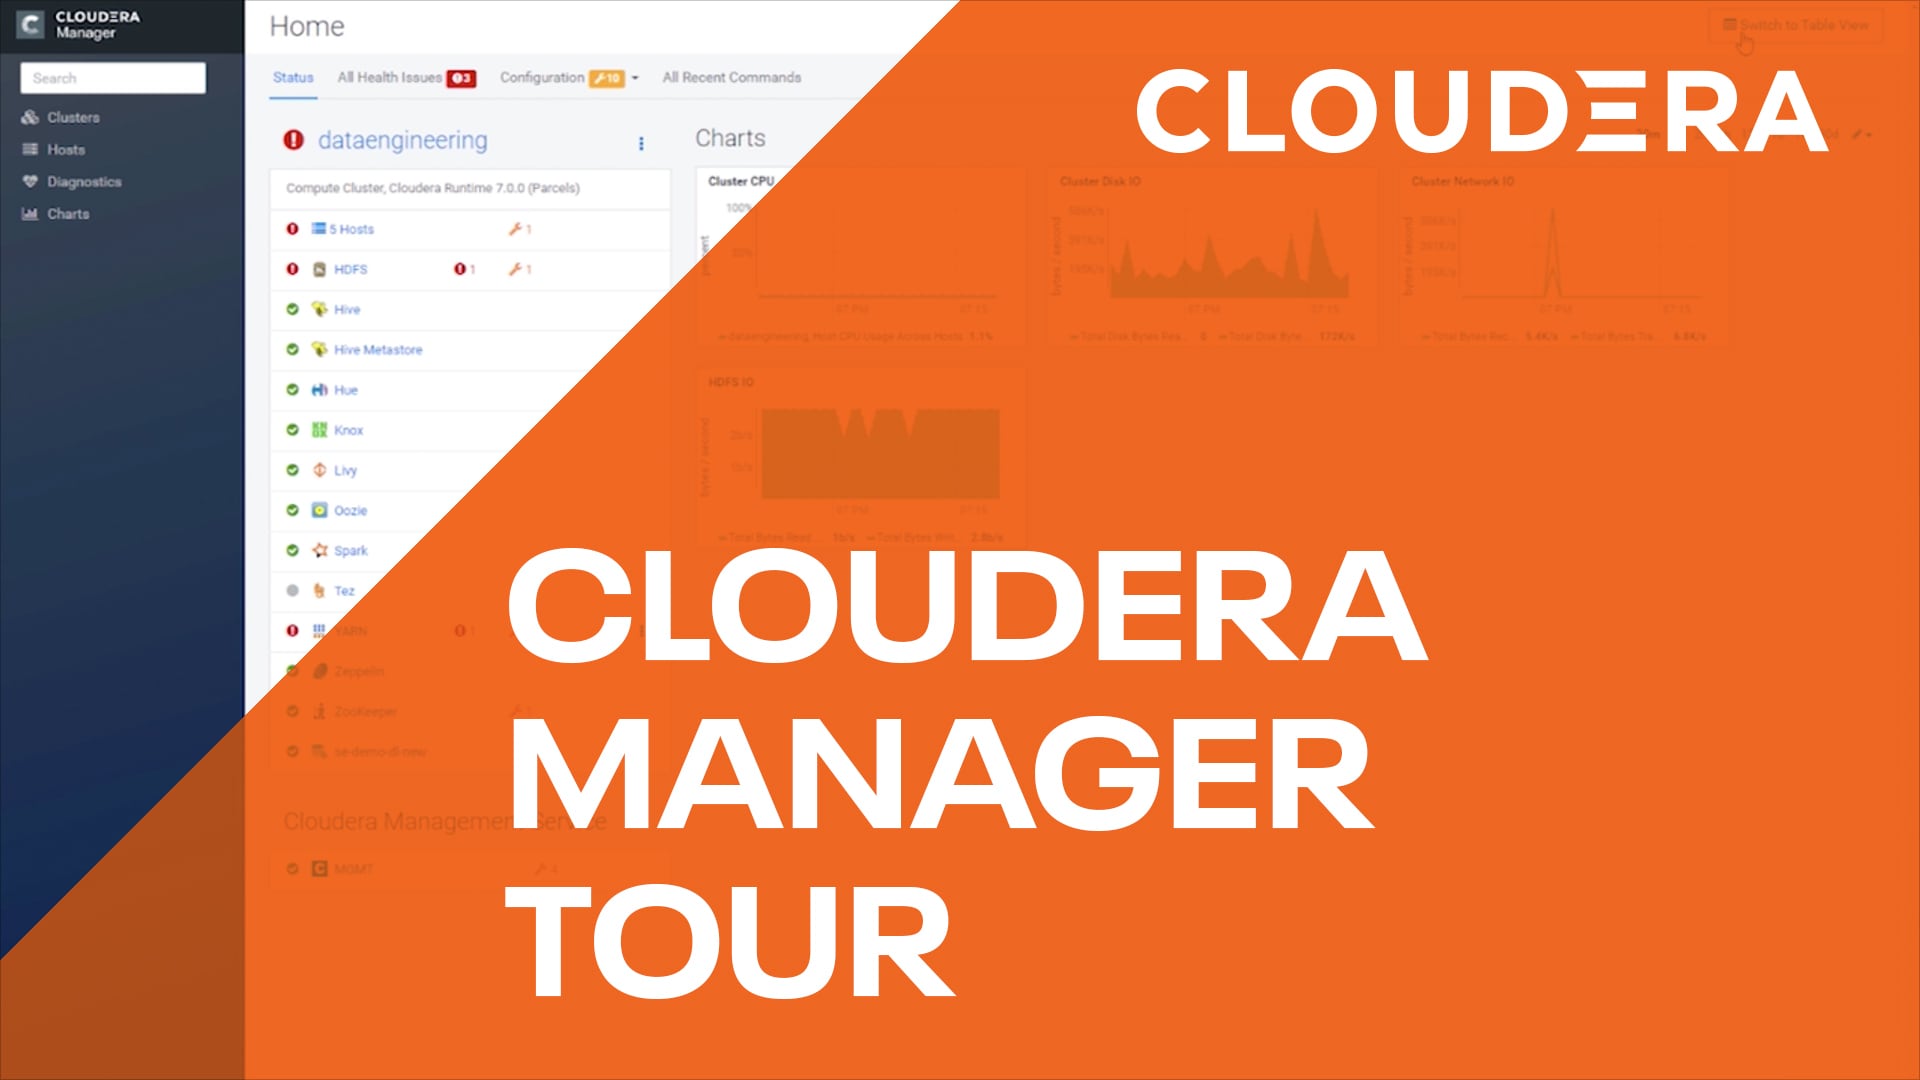 New Cloudera Manager Tour